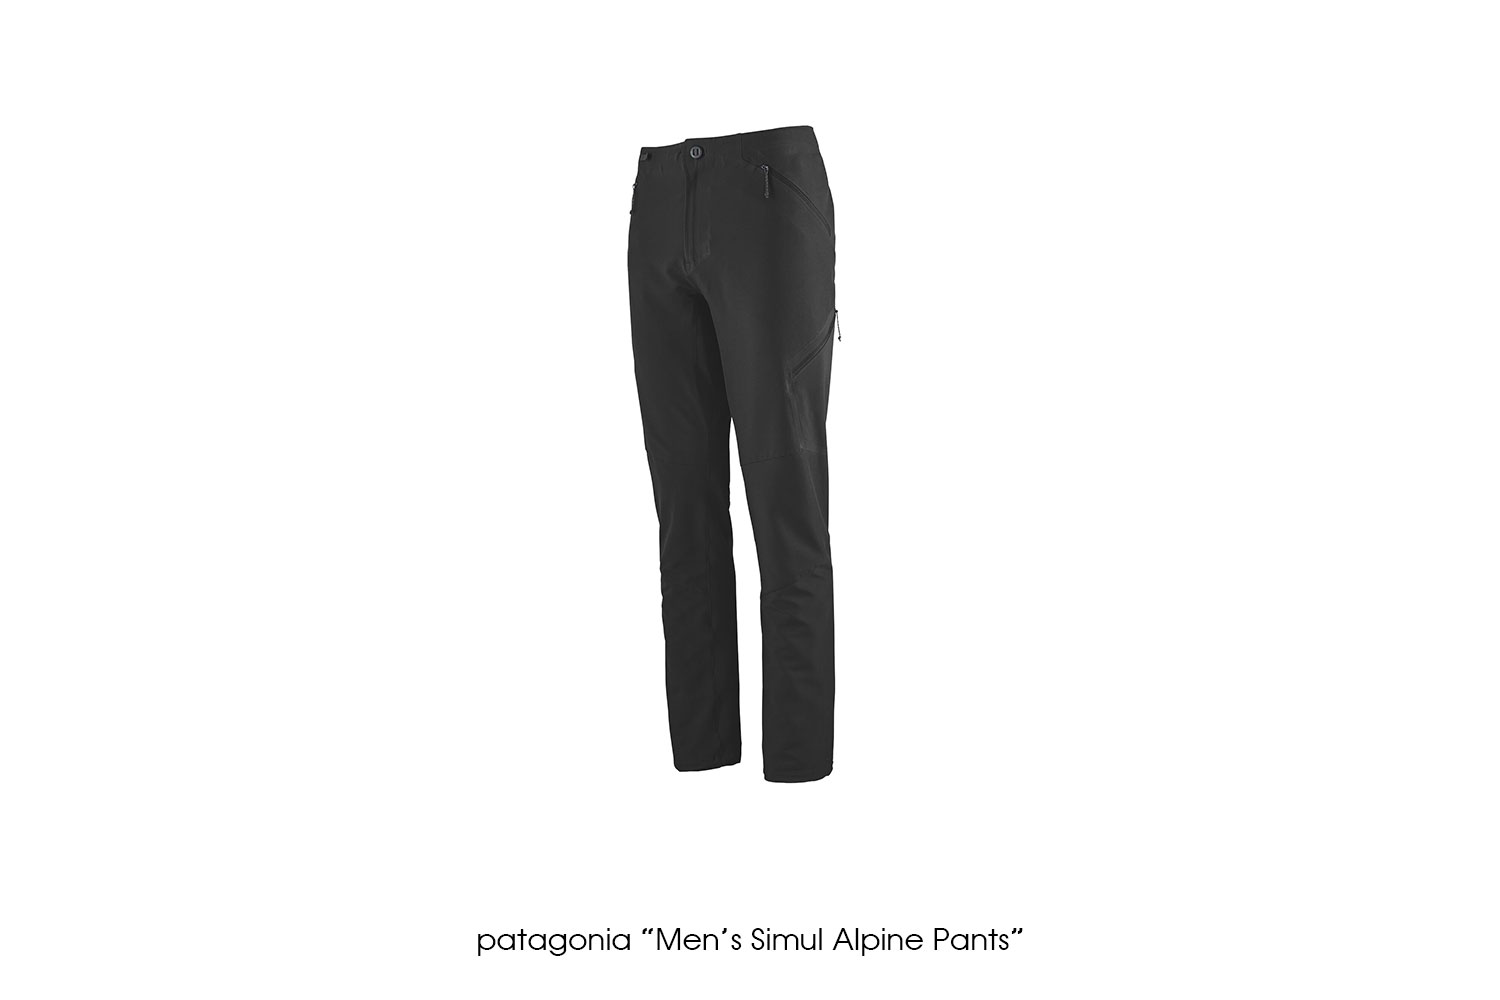 patagonia "Men's Simul Alpine Pants"